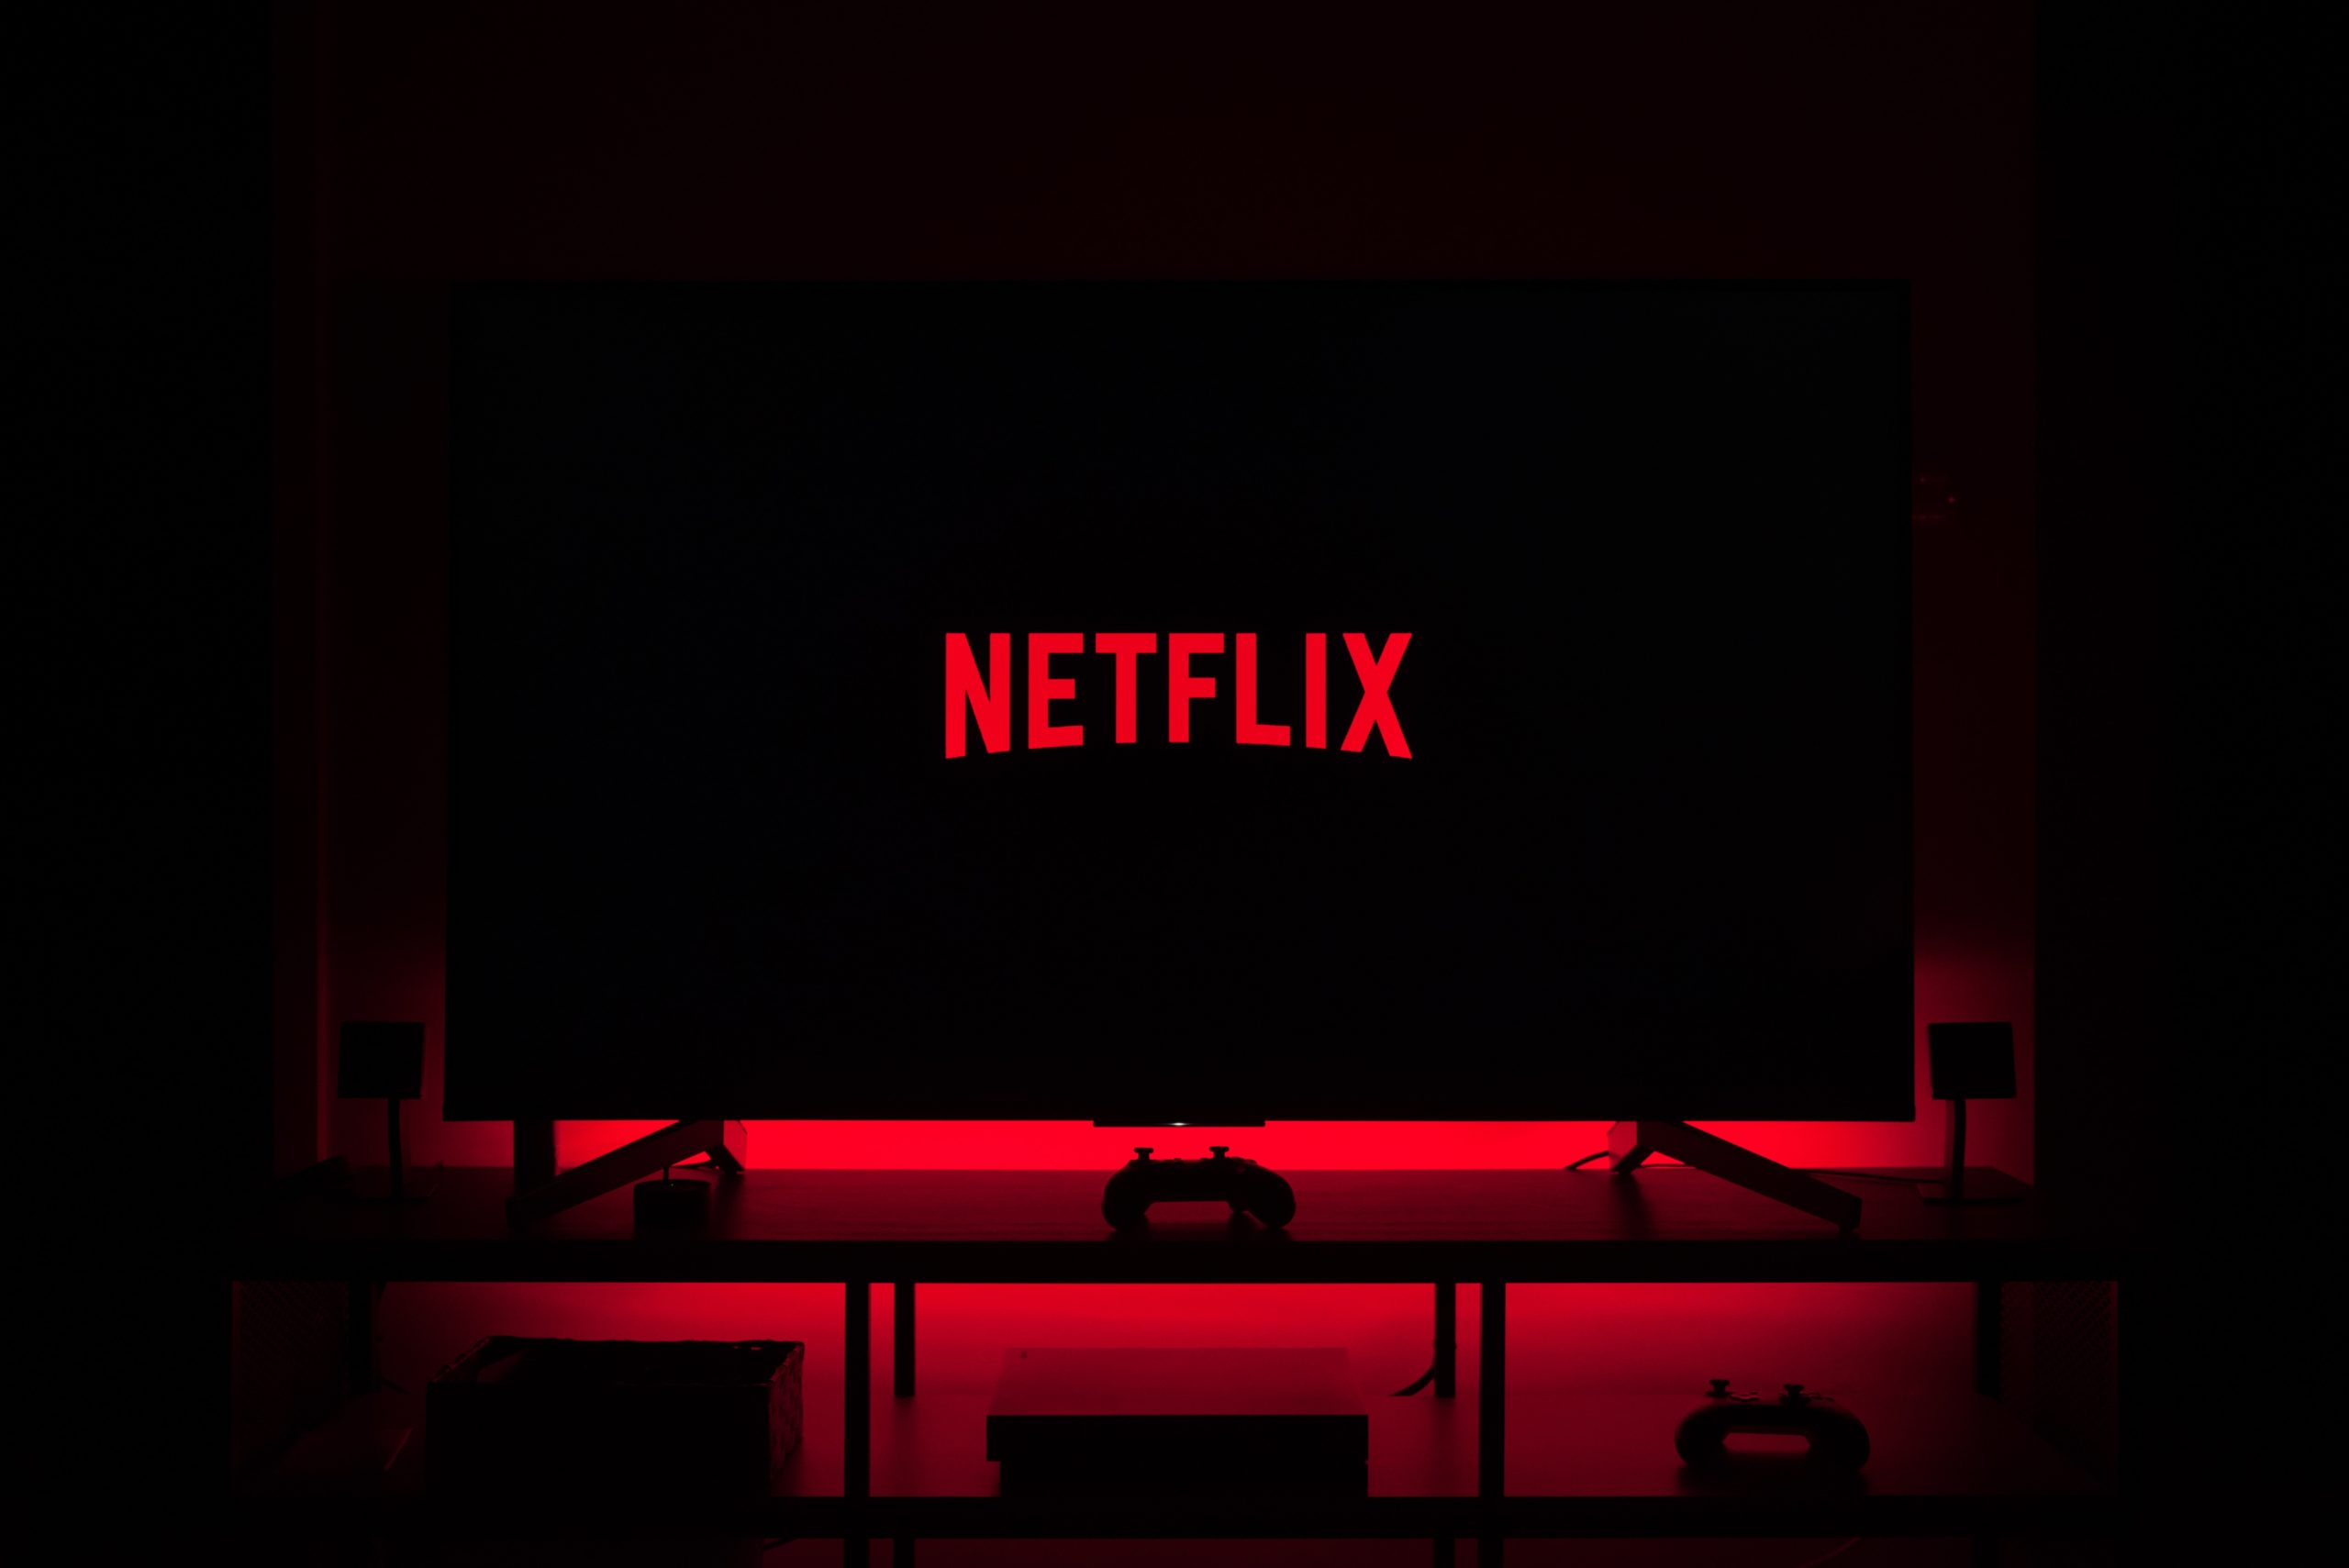 Παρουσιάζει πτώση η μετοχή του Netflix – Αυτός είναι ο πραγματικός λόγος